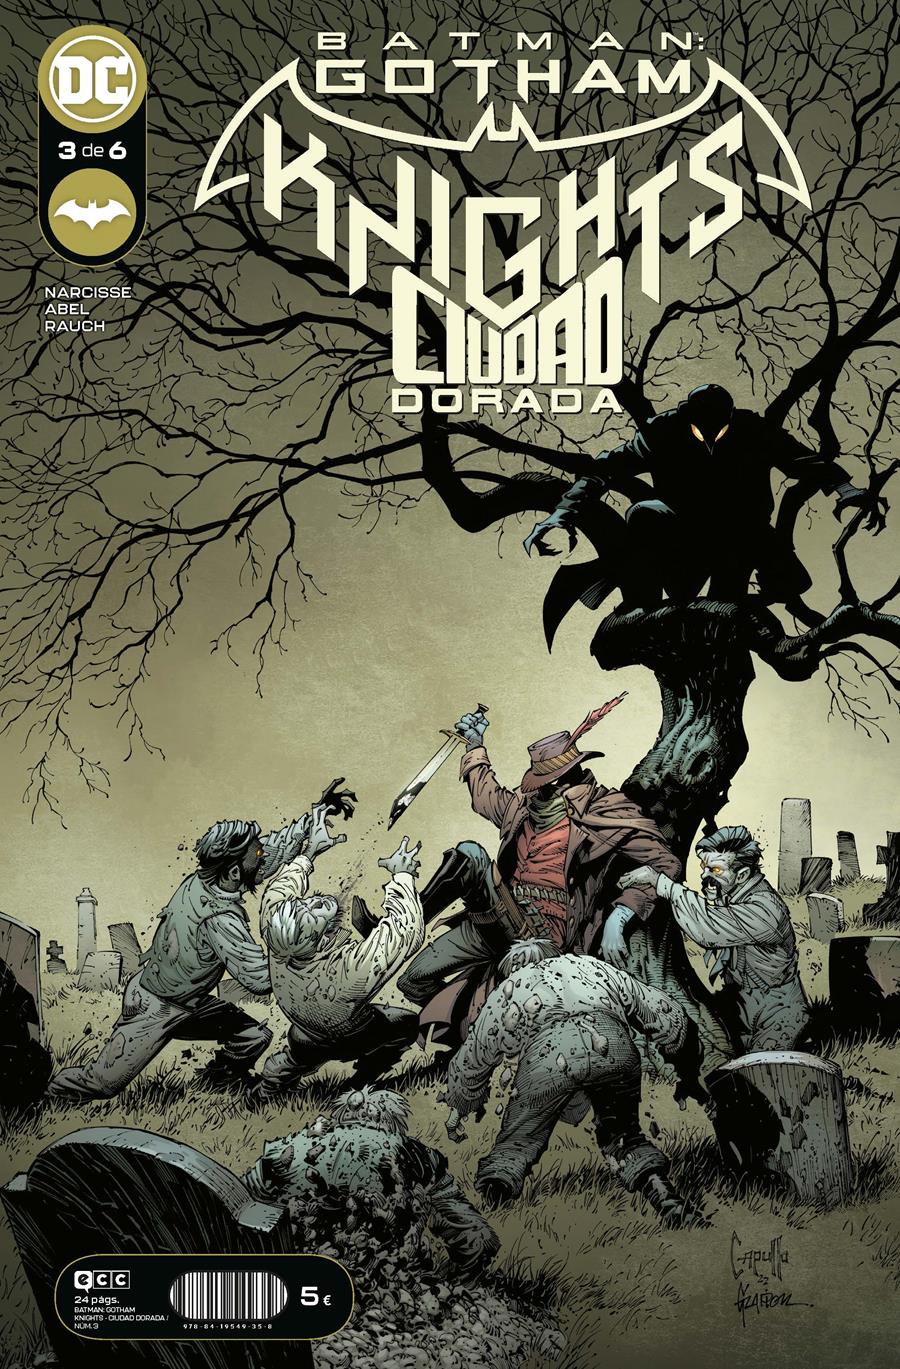 Batman: Gotham Knights - Ciudad dorada núm. 3 de 6 | N1222-ECC05 | Abel / Evan Narcisse | Terra de Còmic - Tu tienda de cómics online especializada en cómics, manga y merchandising